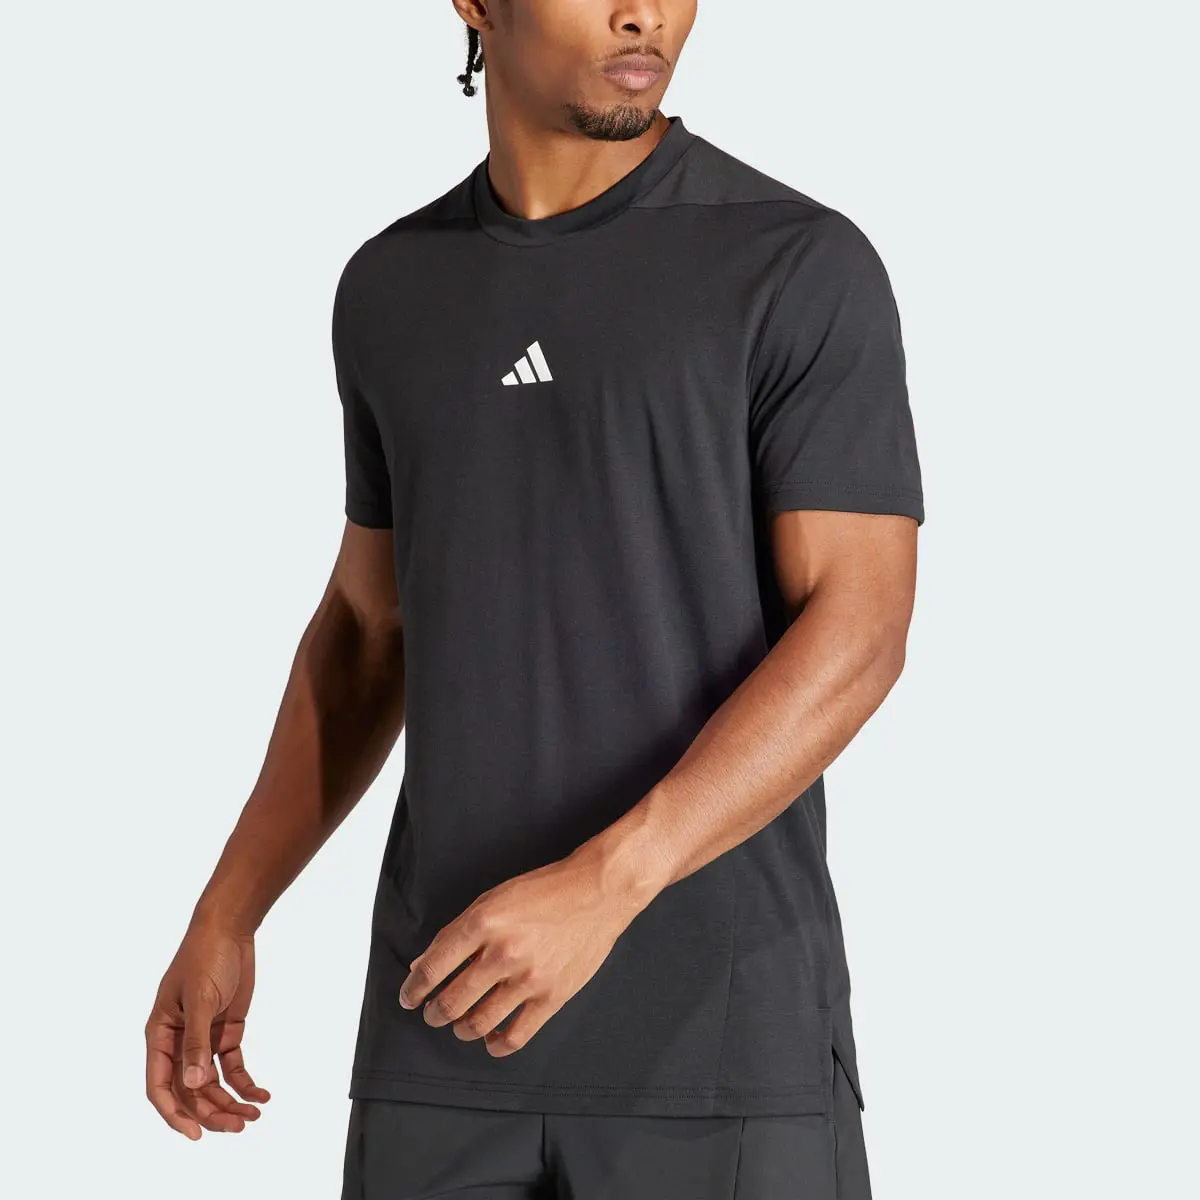 Adidas Designed for Training Antrenman Tişörtü. 1